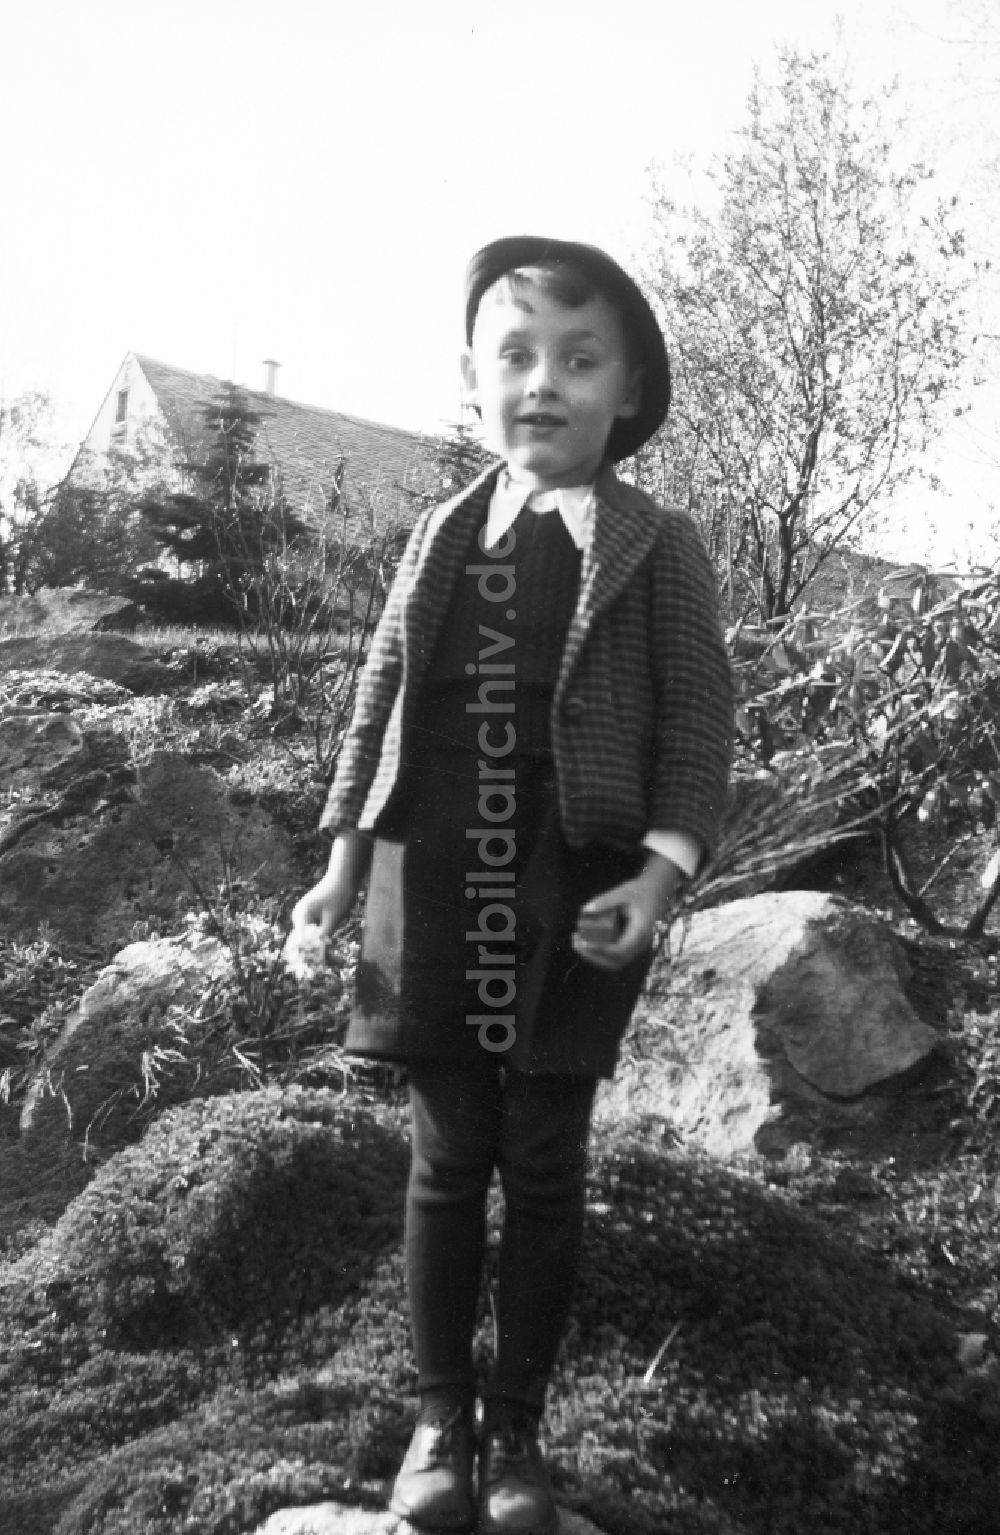 DDR-Bildarchiv: Arnstadt - Kleiner Junge mit Hut in Arnstadt in Thüringen auf dem Gebiet des Deutschen Reiches, Deutschland